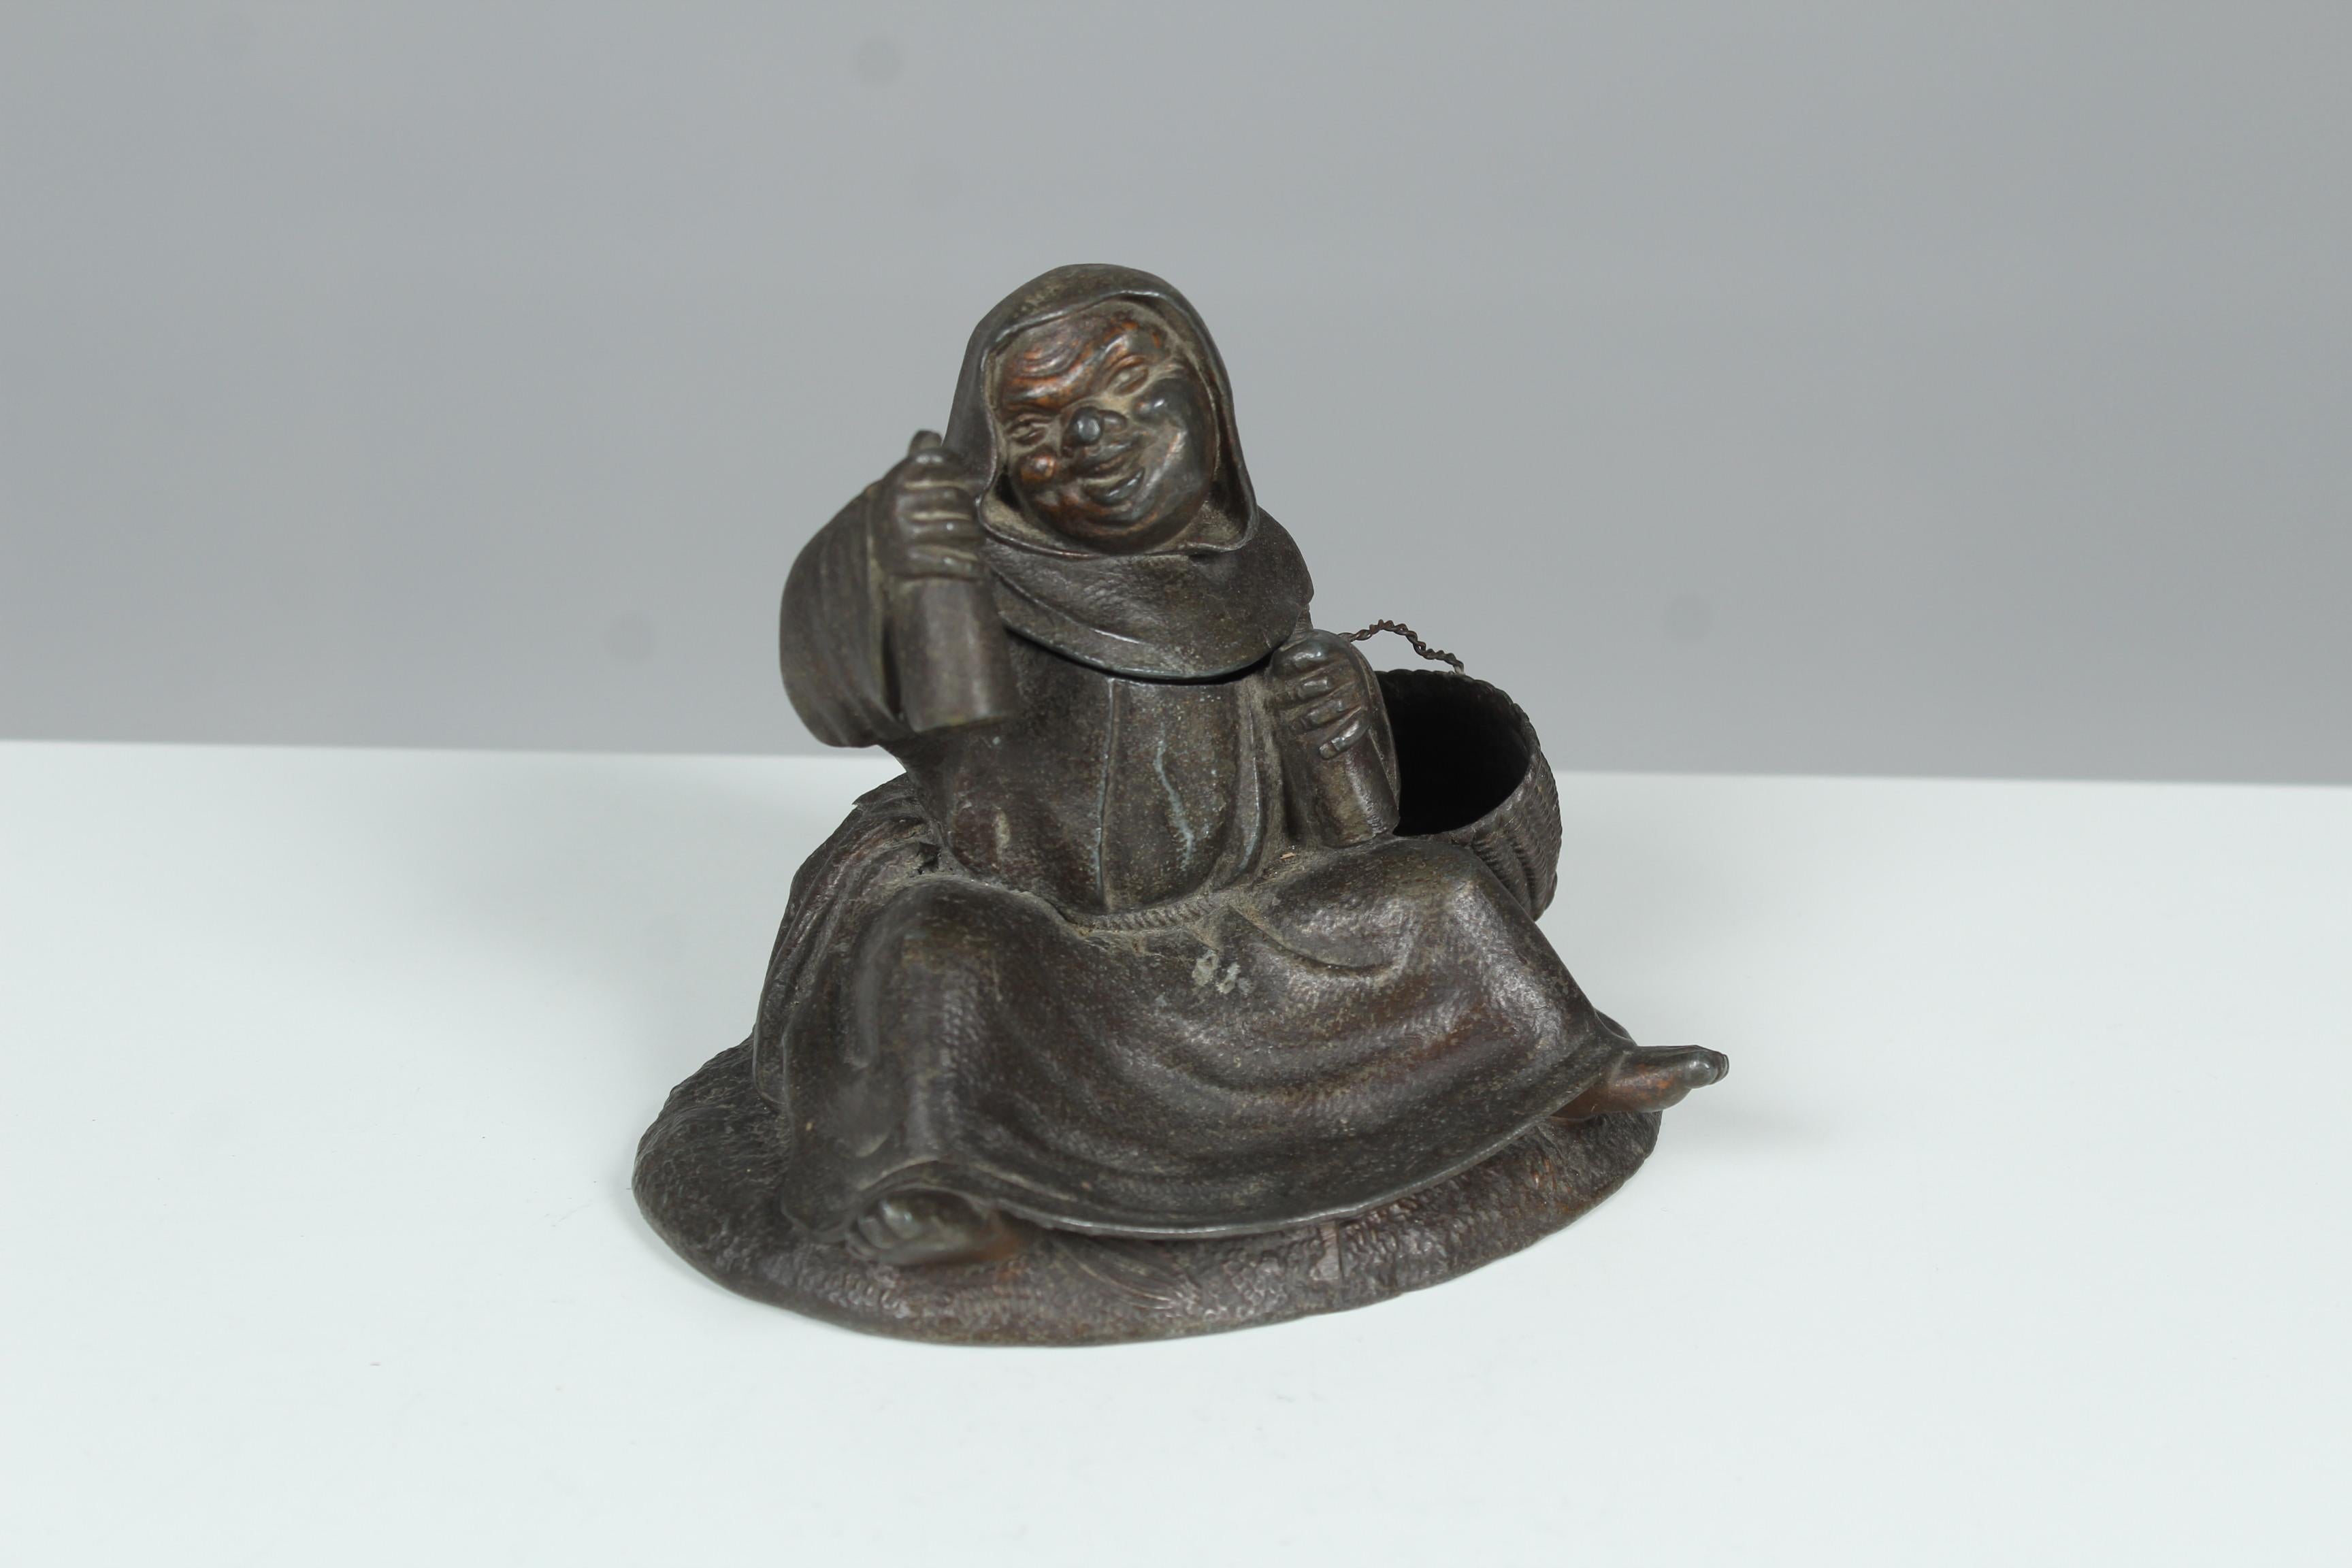 Seltene Skulptur eines fröhlichen Mönchs mit einem Geheimfach.
Ein so genanntes Pyrogene, das für Rauchutensilien wie Streichhölzer verwendet wurde.
Der Mönch hält zwei Flaschen in den Händen und hebt einen Arm, um mit der Flasche anzustoßen.
Der